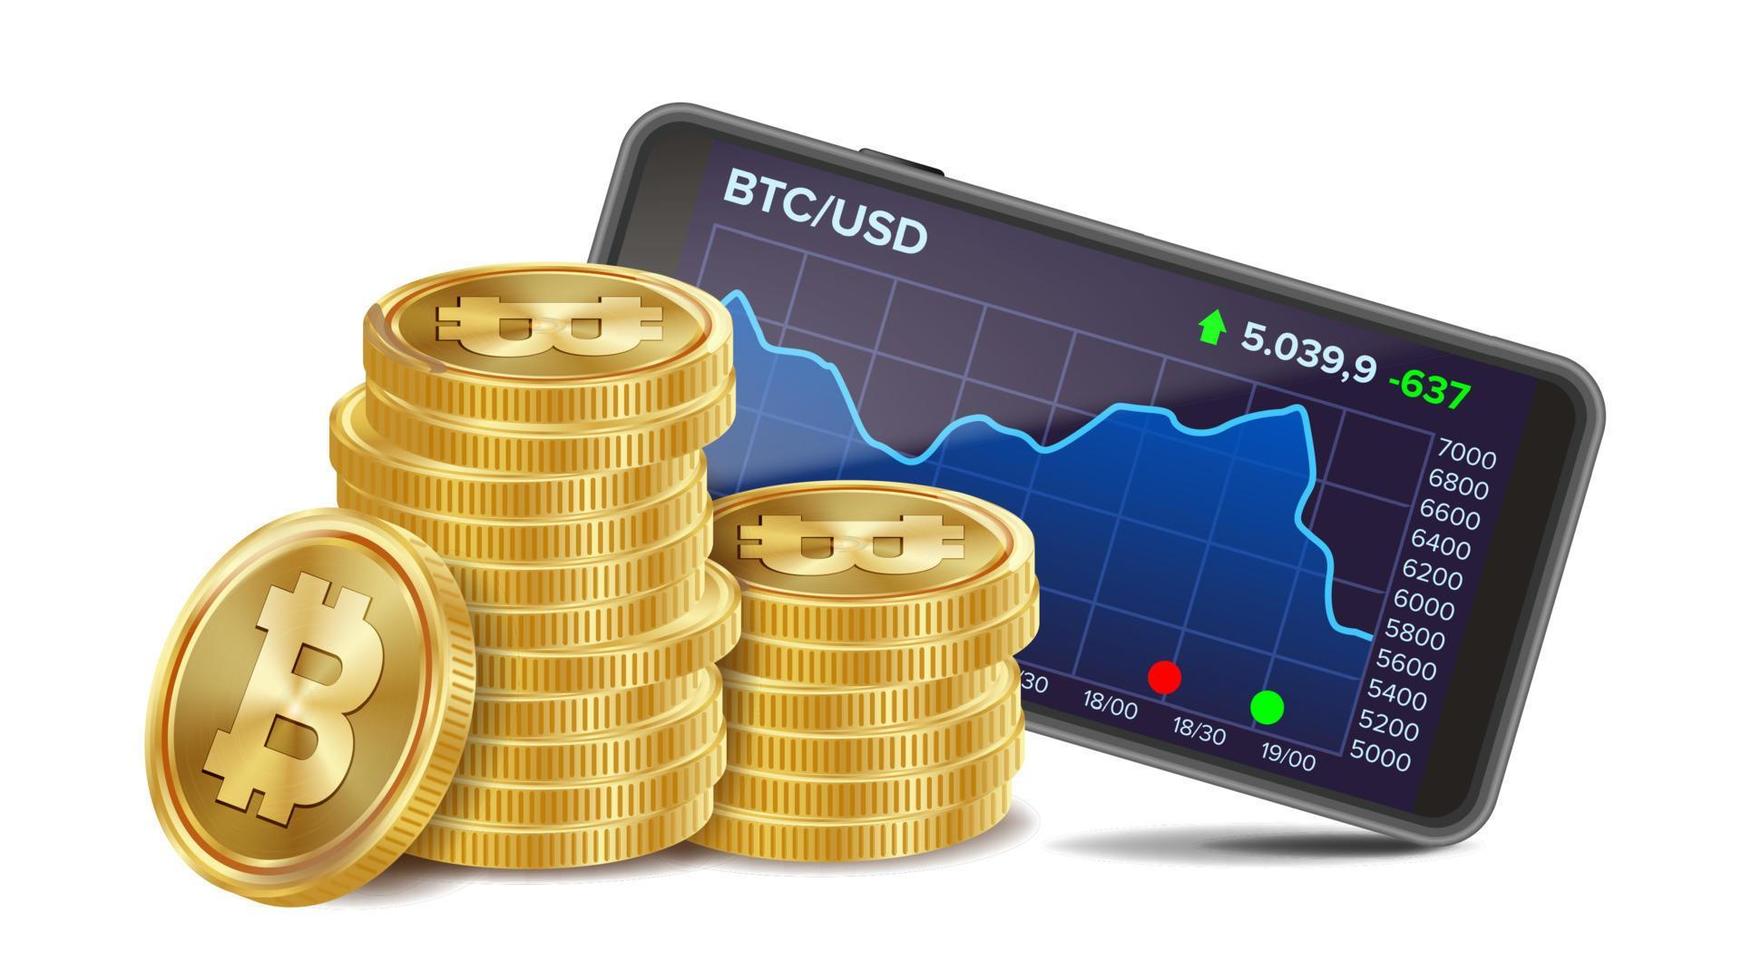 smartphone med bitcoin handel Diagram vektor. realistisk gyllene mynt. virtuell pengar. isolerat på vit illustration vektor